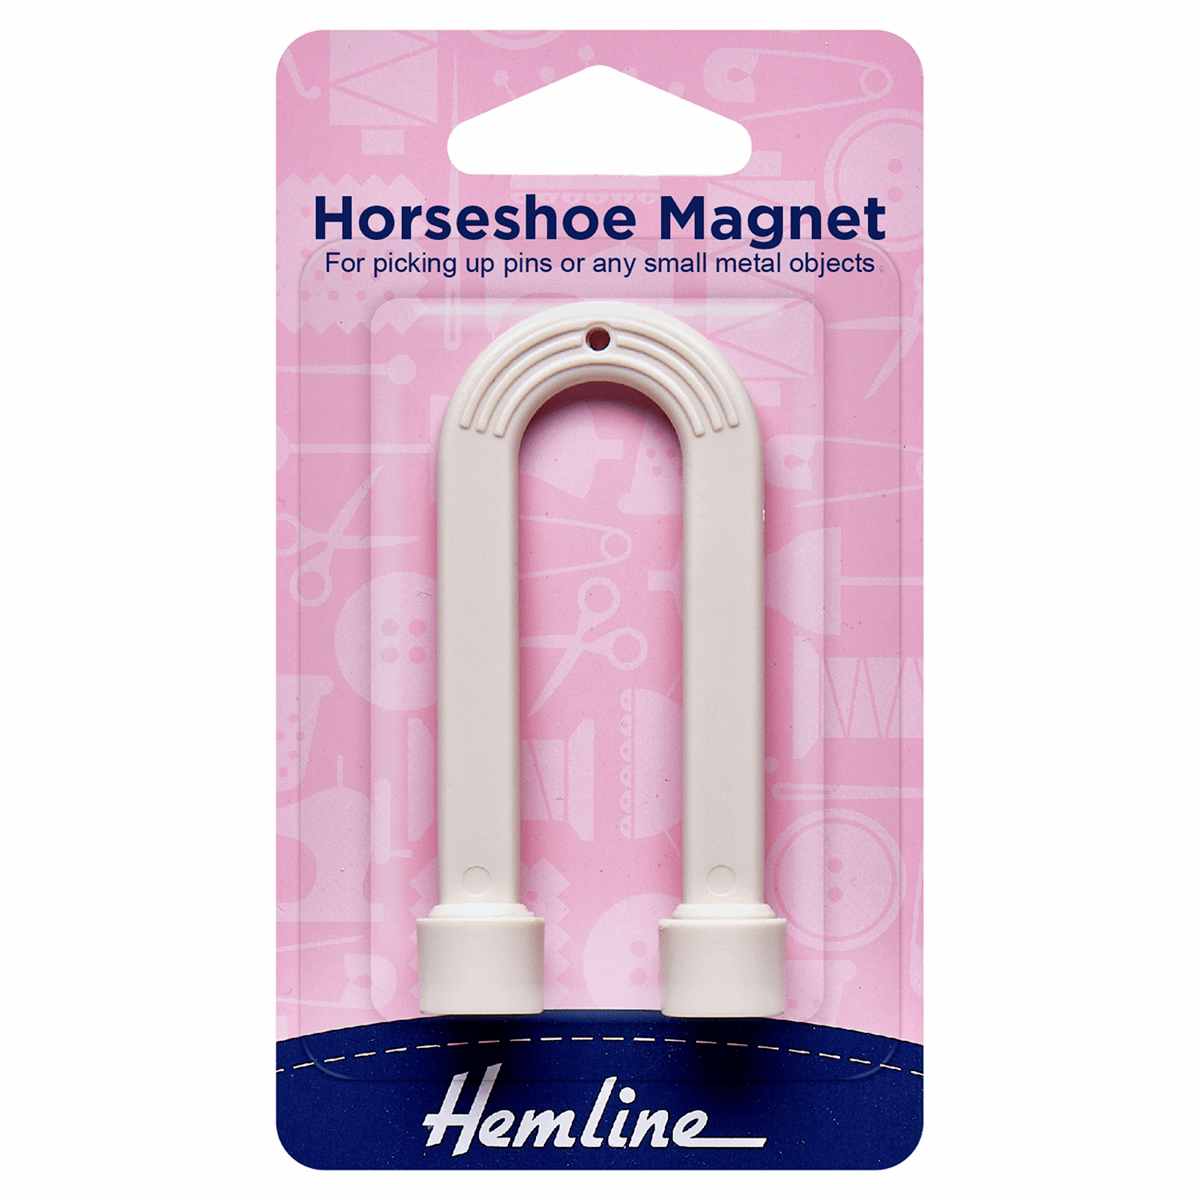 HORSESHOE MAGNET